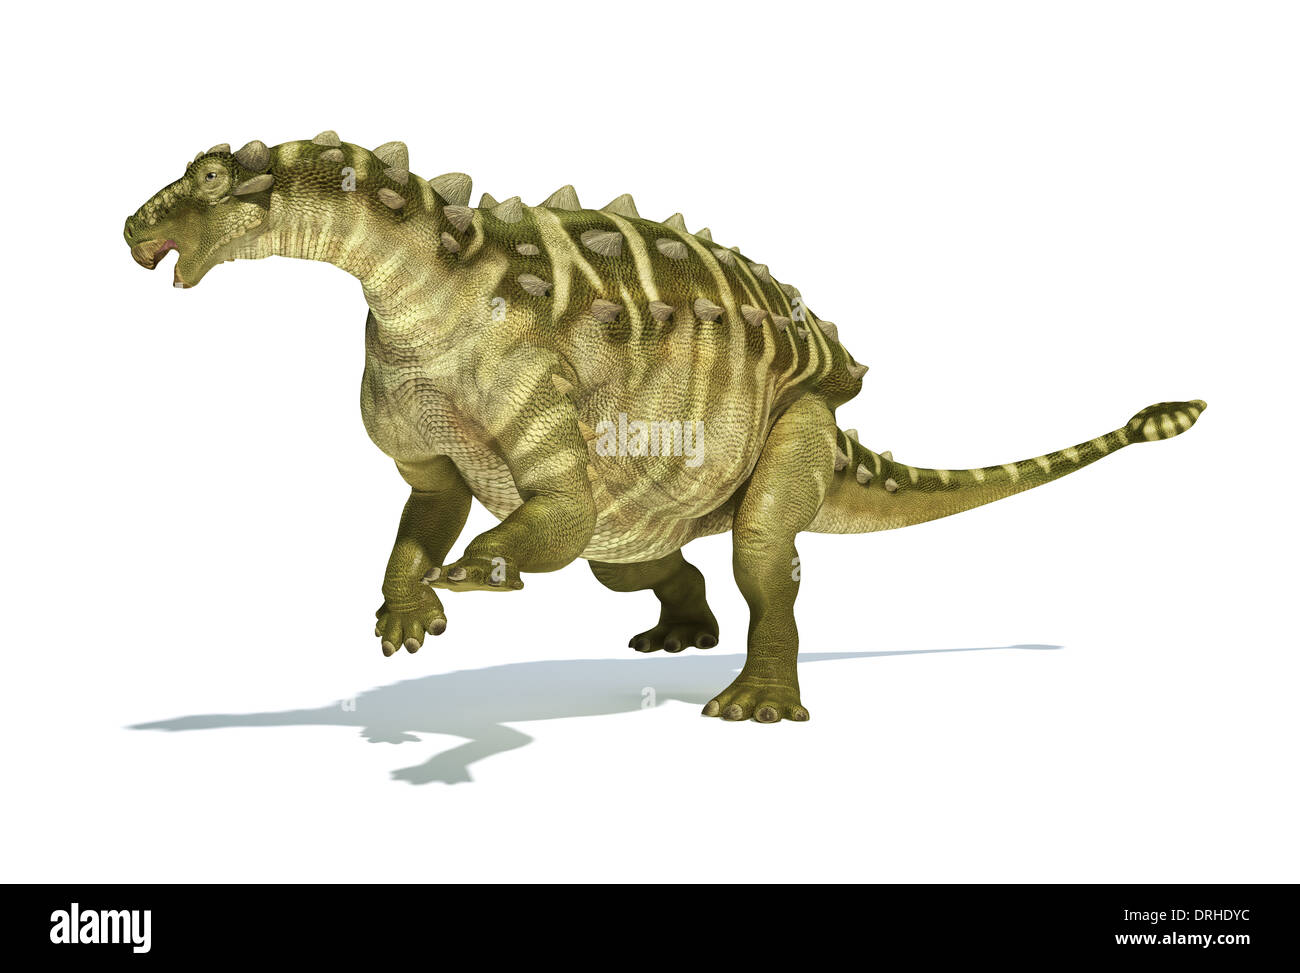 Dinosauro Talarurus, foto-realistico, scientificamente corretta rappresentazione. Visualizzazione dinamica. Su sfondo bianco con ombra. Foto Stock